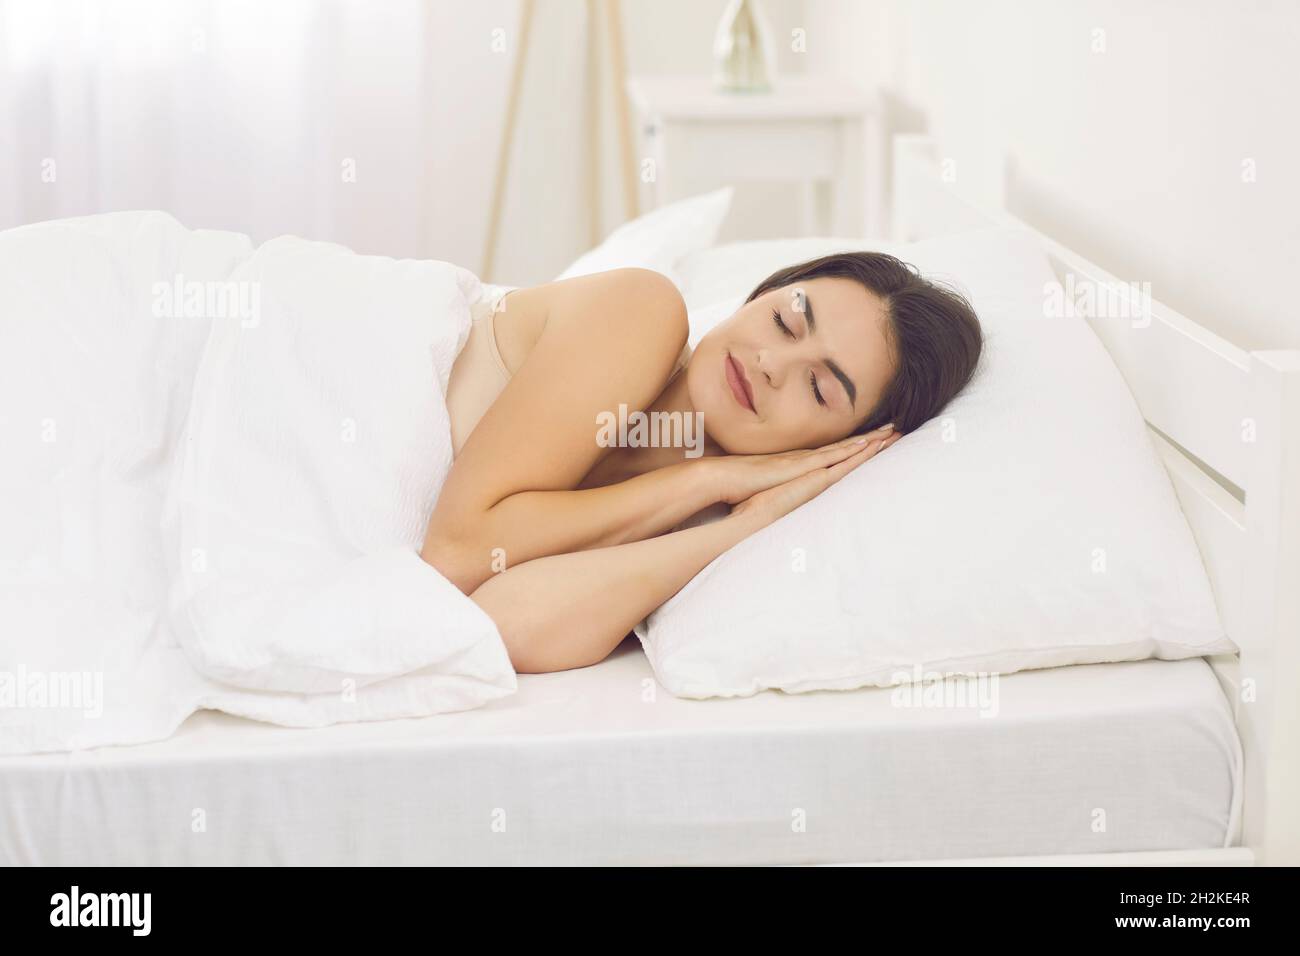 Belle femme appréciant une bonne nuit de sommeil sur des draps blancs et un oreiller dans son lit Banque D'Images